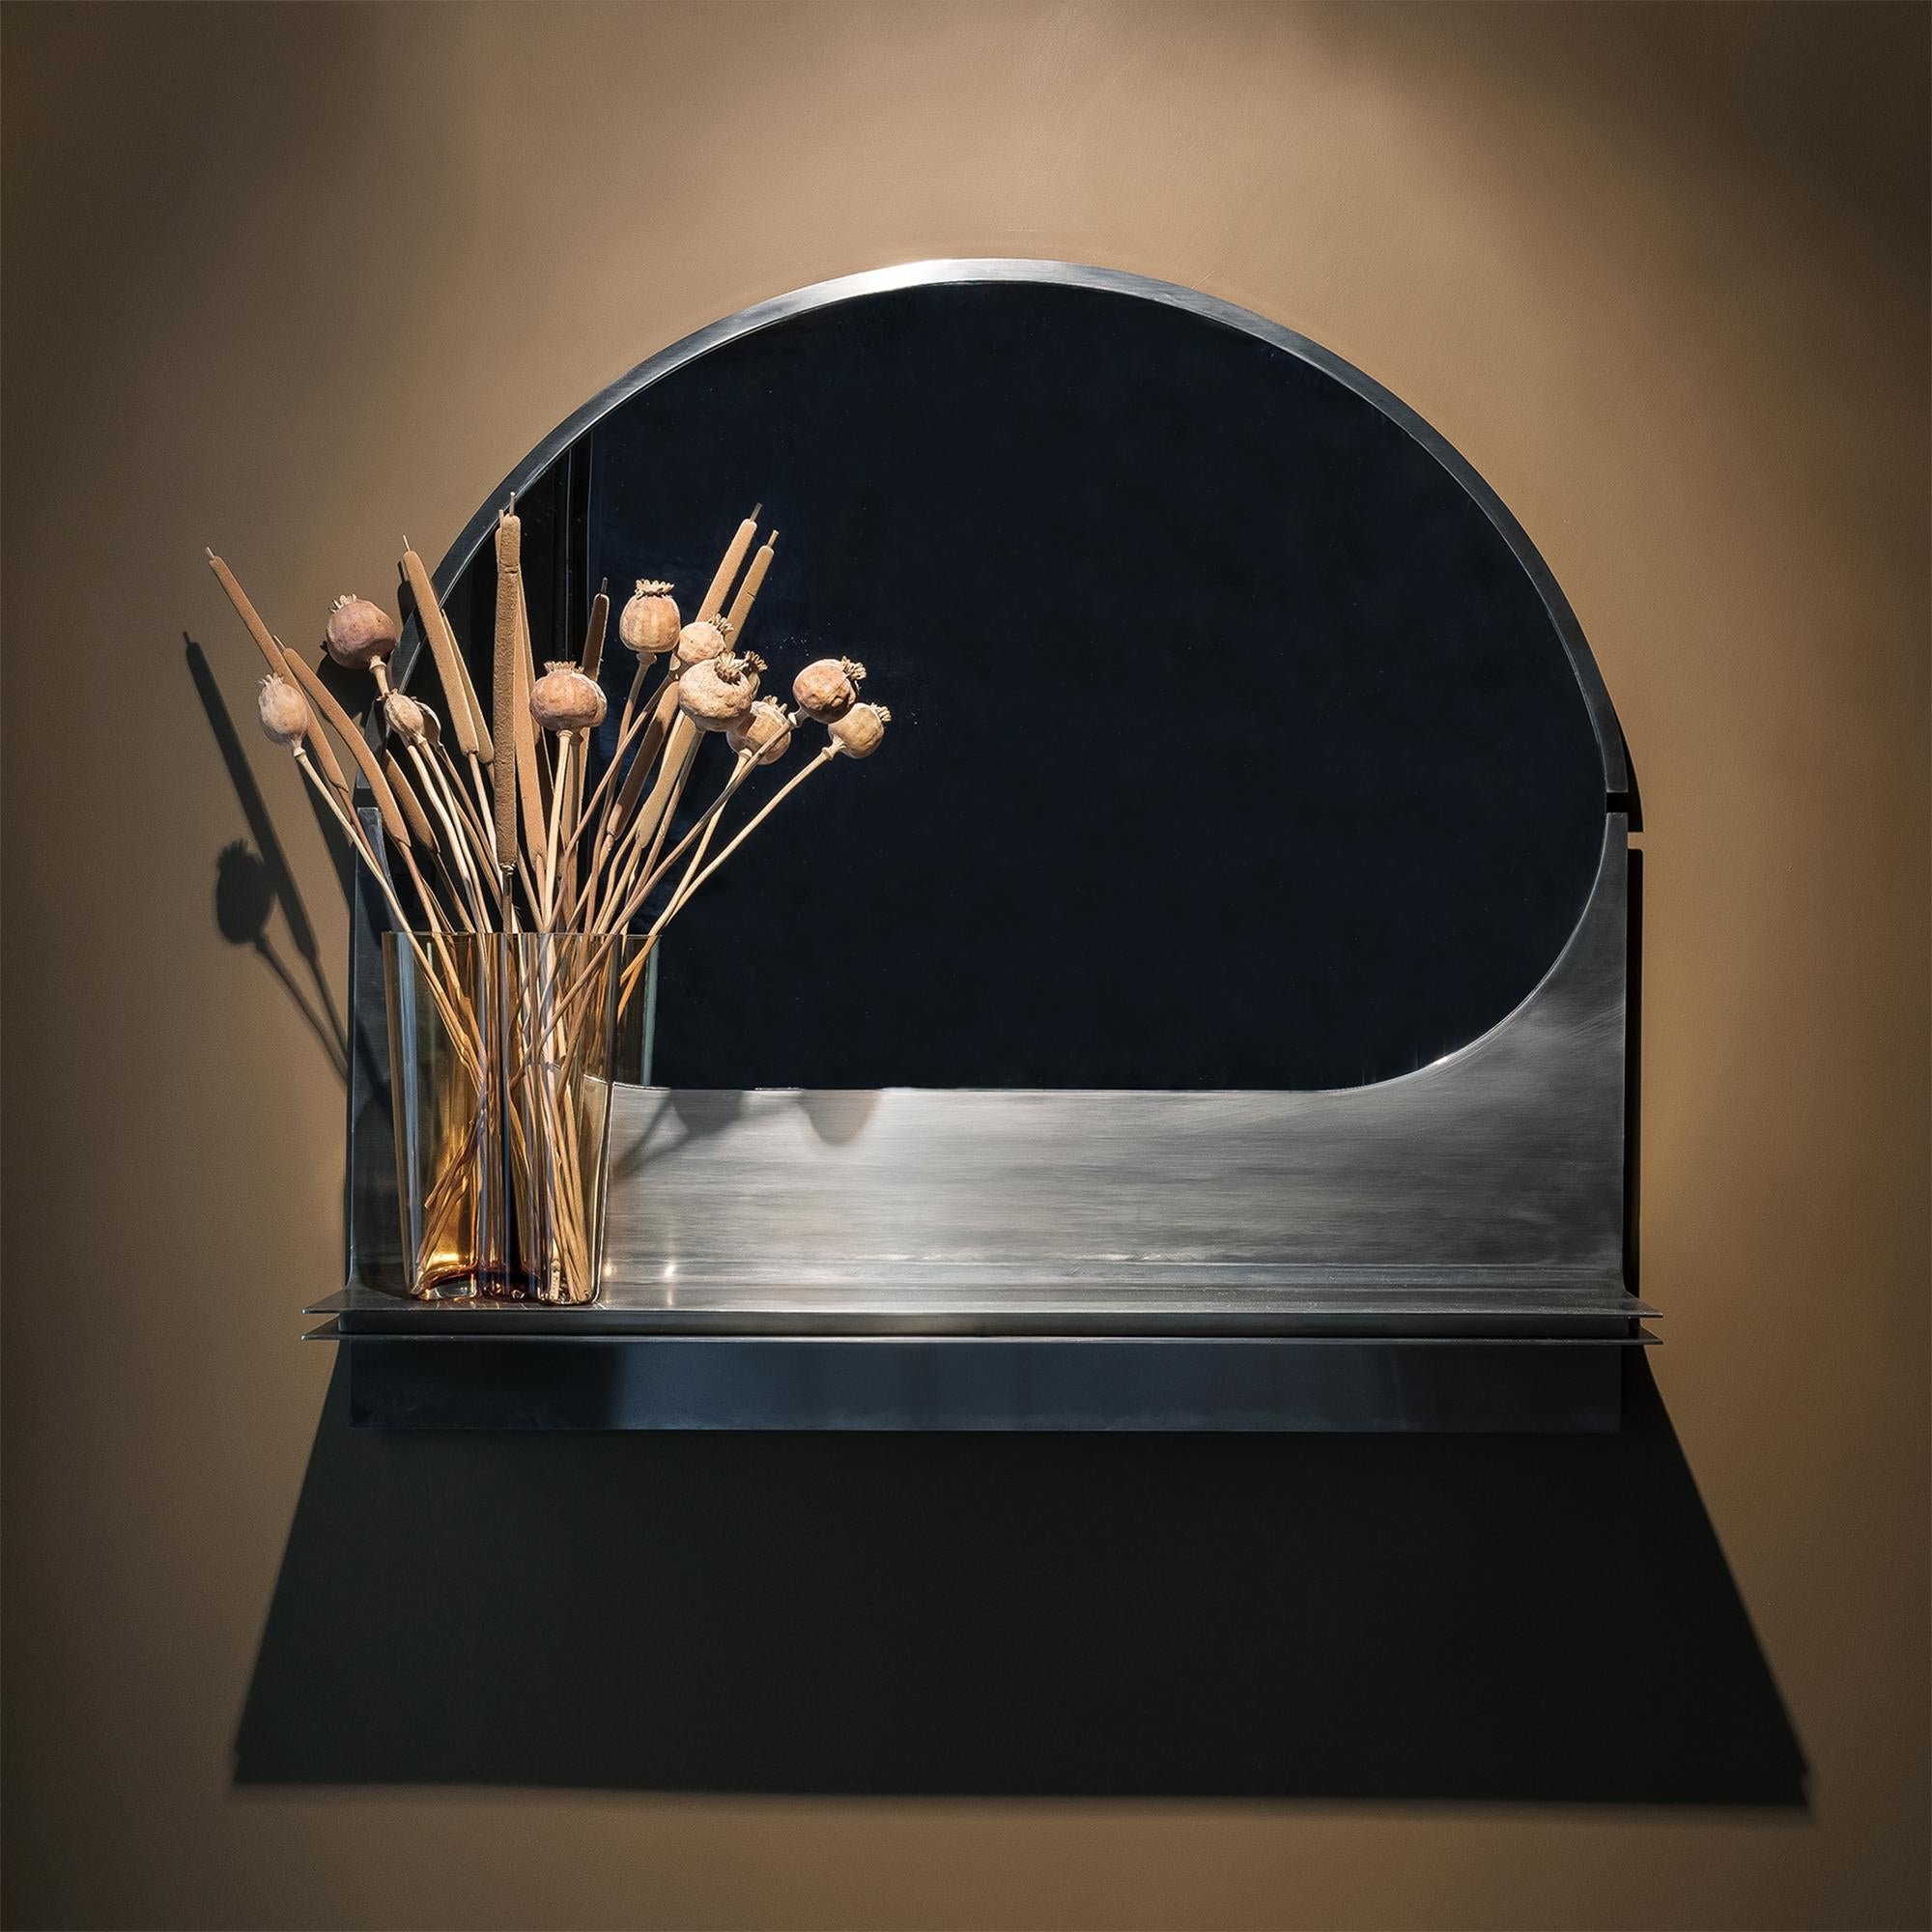 Miroir en acier inoxydable avec étagère.
Le miroir de courbure peut être utilisé comme un élément d'accueil simple et fonctionnel, notamment aux entrées.
 